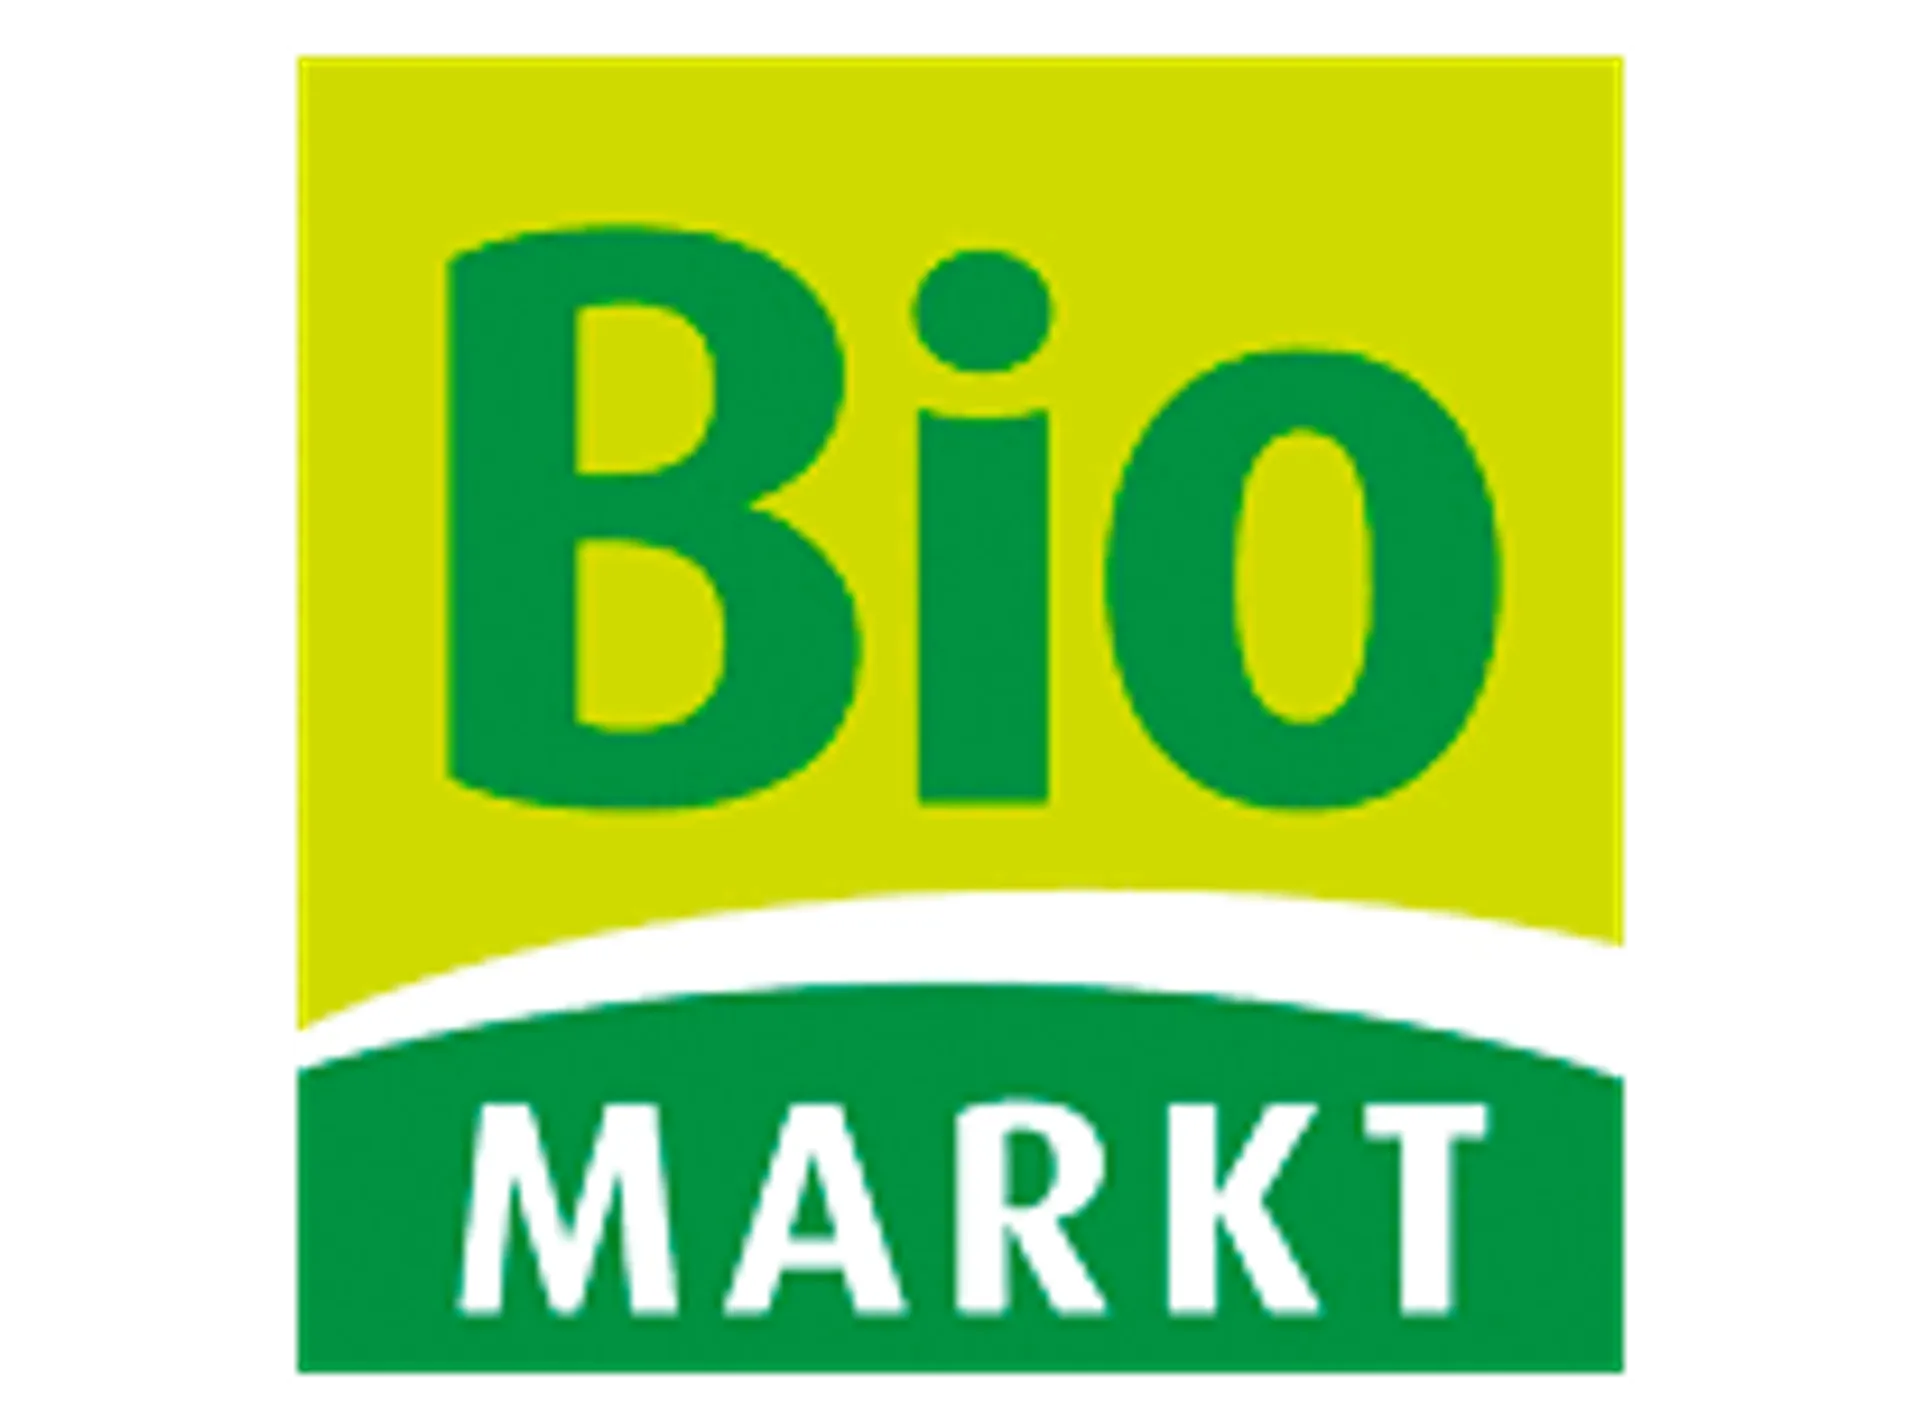 ERDI BIOMARKT logo